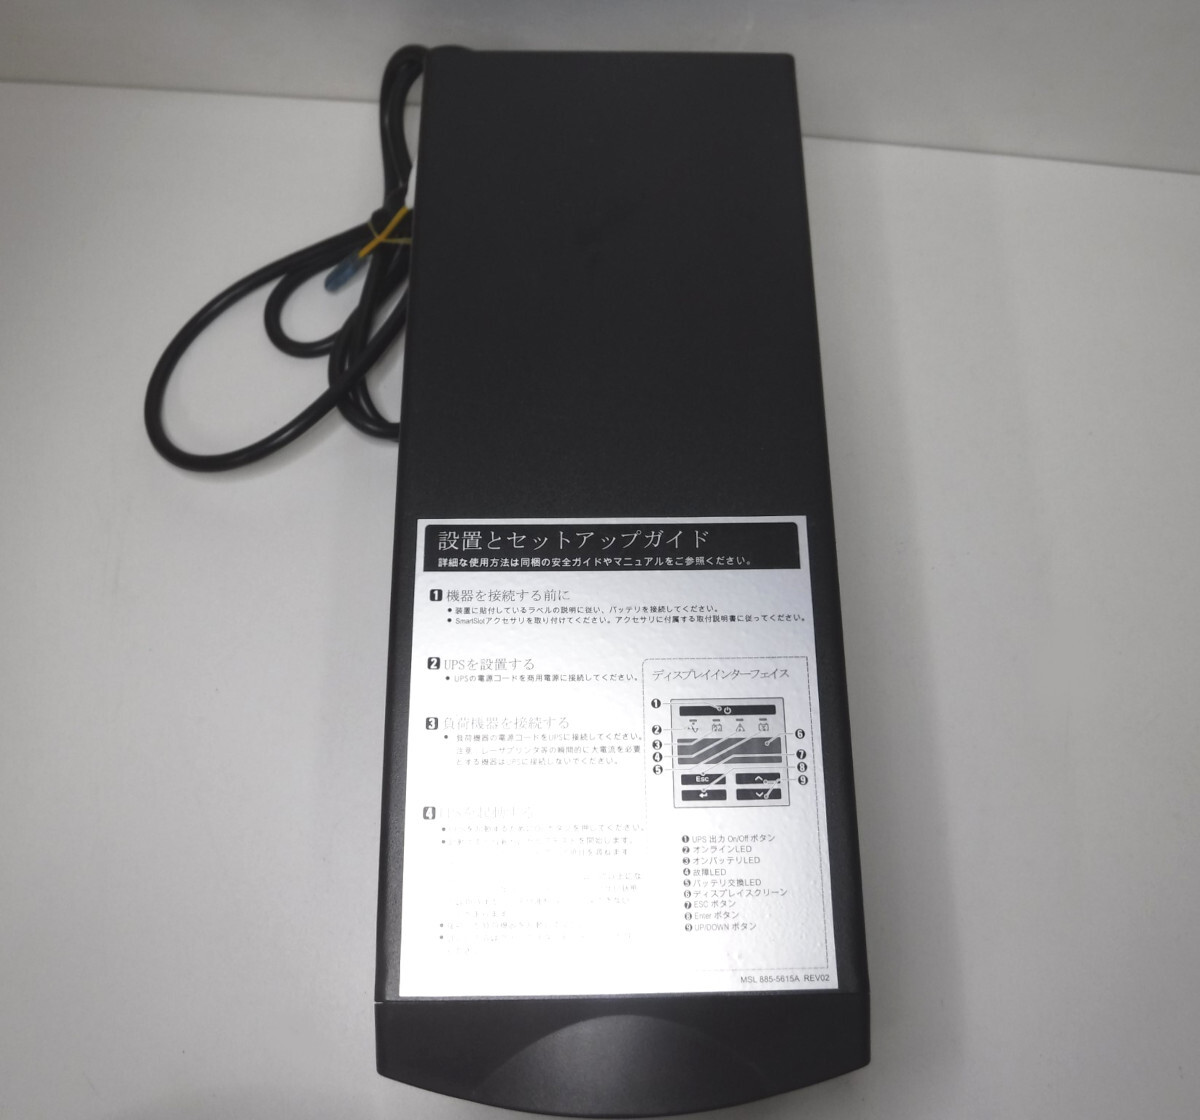  подержанный товар  PC Smart-UPS 500 100V  нет   отключение электричества  Электропитание  устройство     отправка 120 размер  